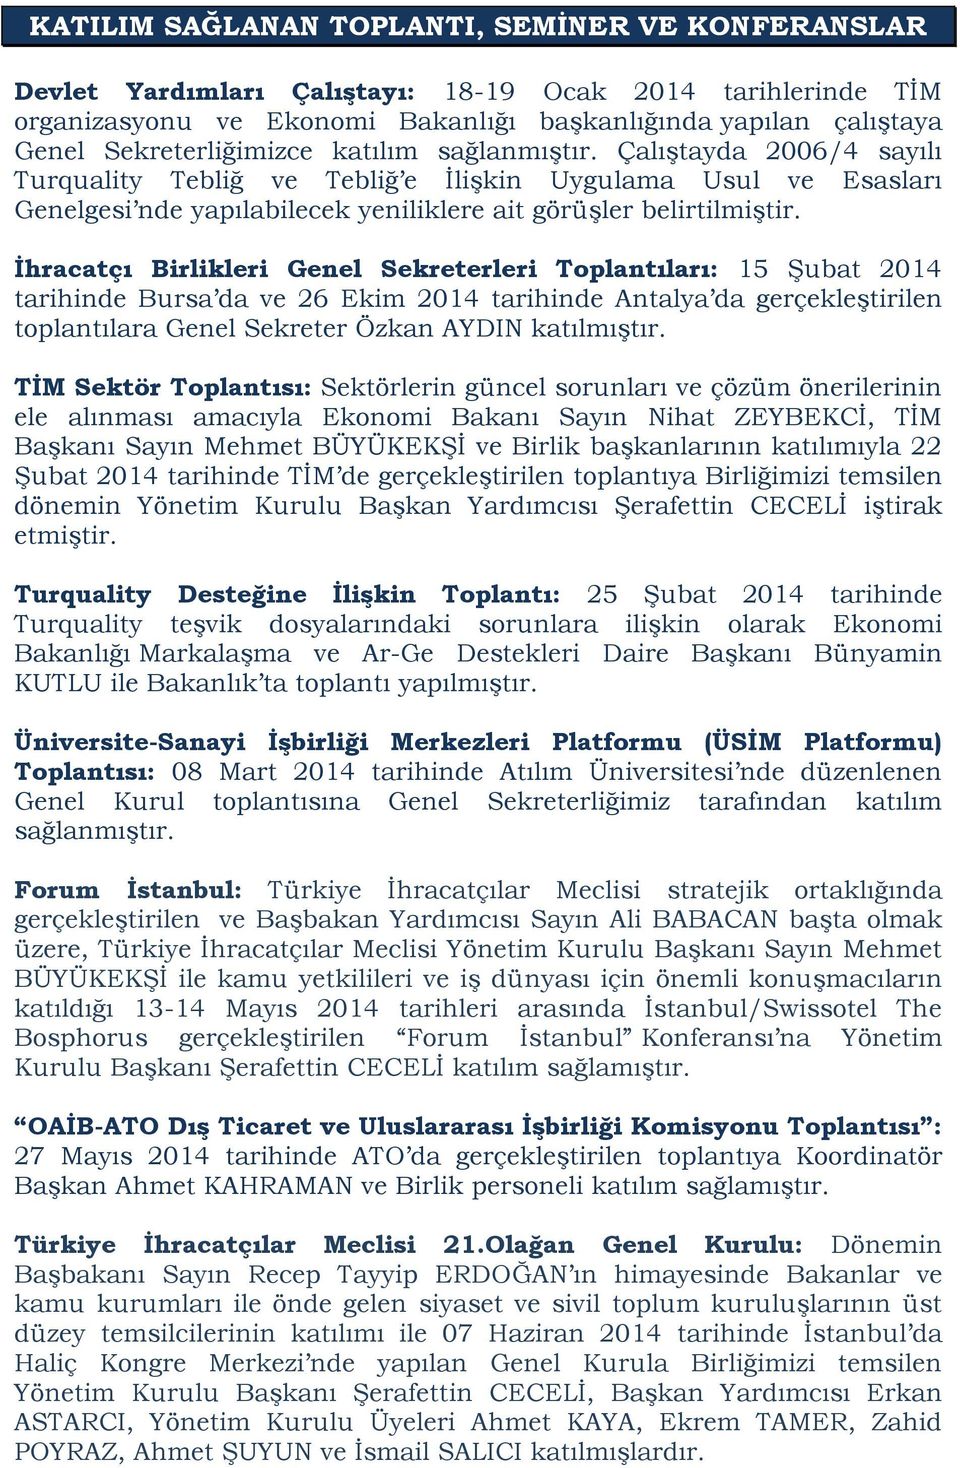 İhracatçı Birlikleri Genel Sekreterleri Toplantıları: 15 Şubat 2014 tarihinde Bursa da ve 26 Ekim 2014 tarihinde Antalya da gerçekleştirilen toplantılara Genel Sekreter Özkan AYDIN katılmıştır.